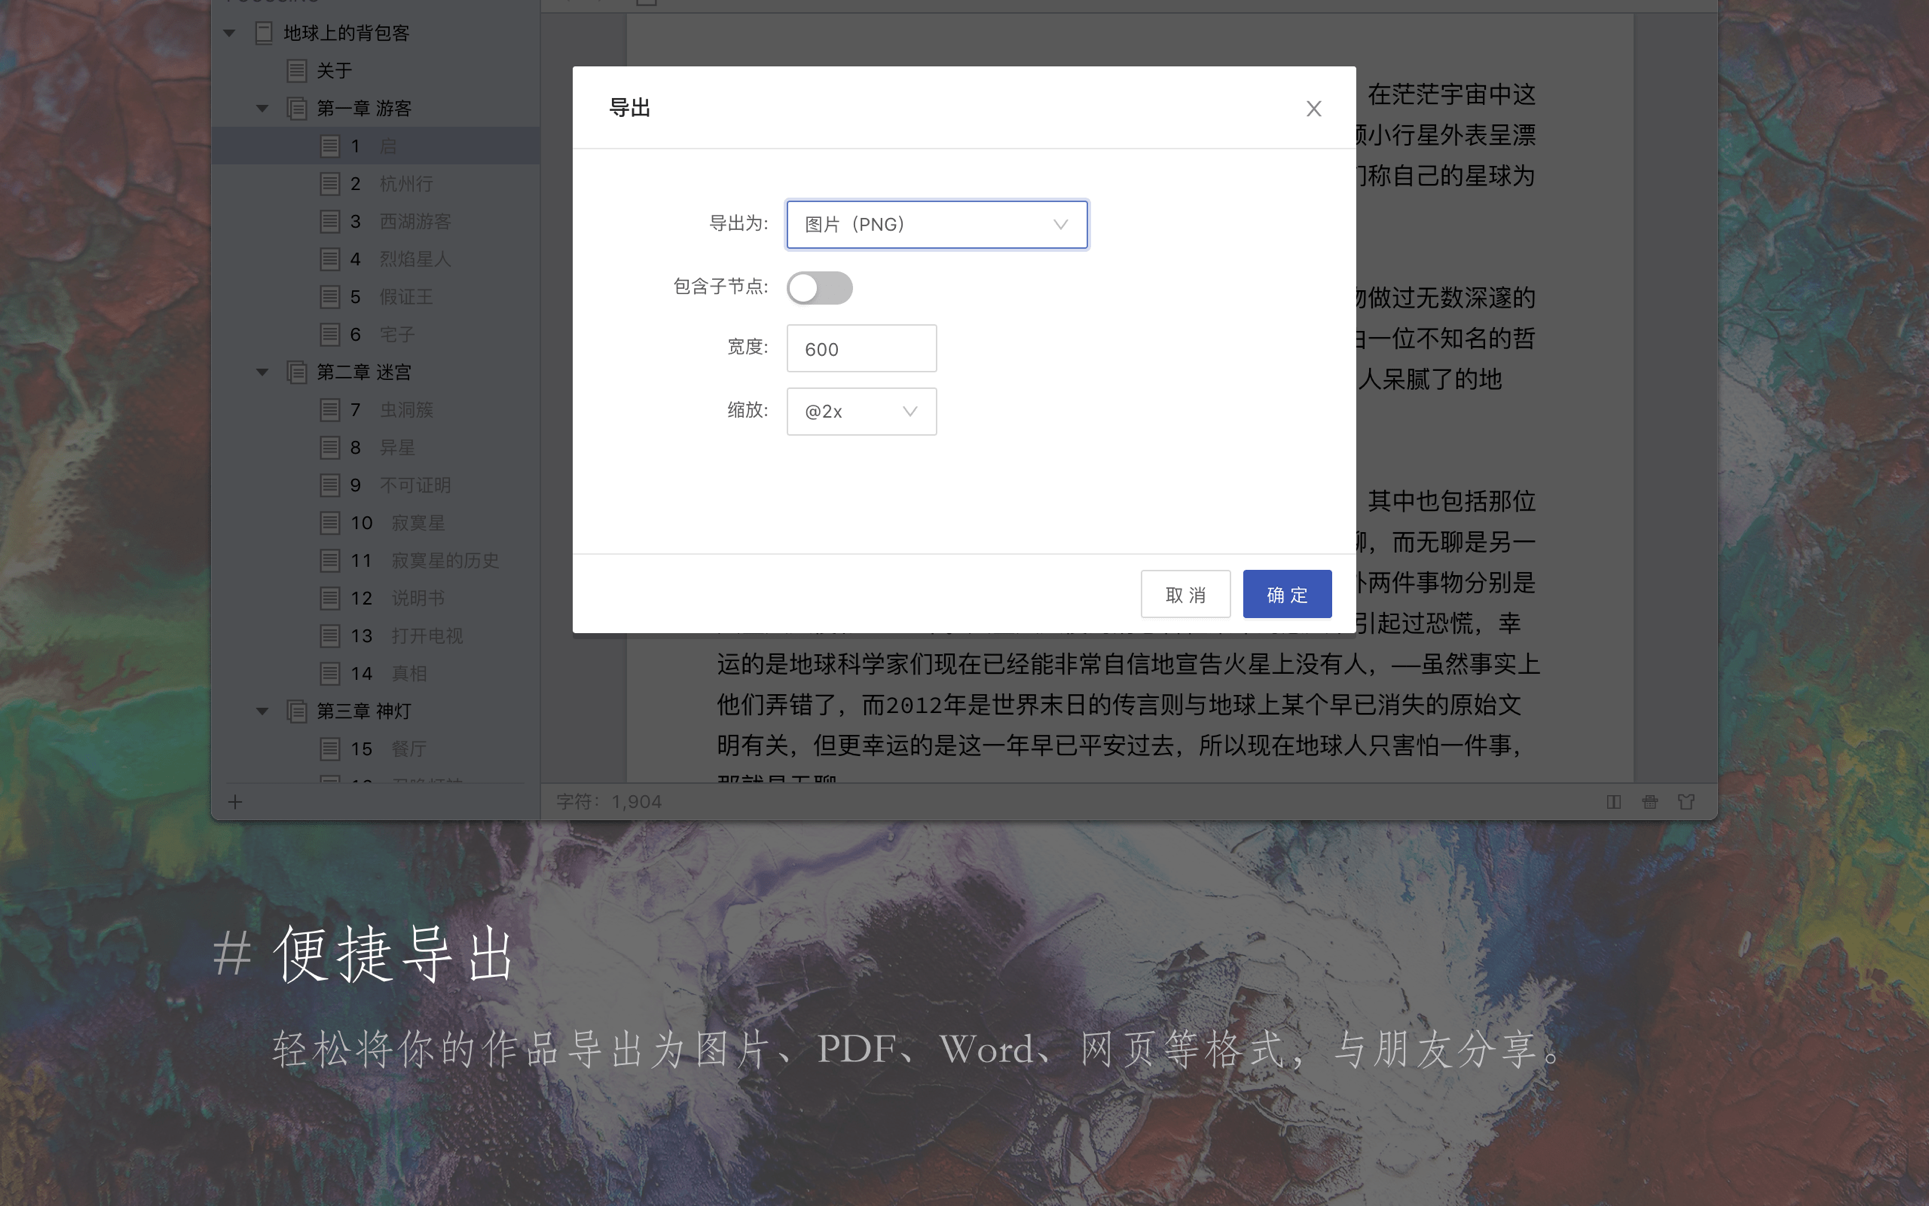 妙笔 WonderPen for Mac 2.4.3.7284 中文破解版 优秀的文本写作工具